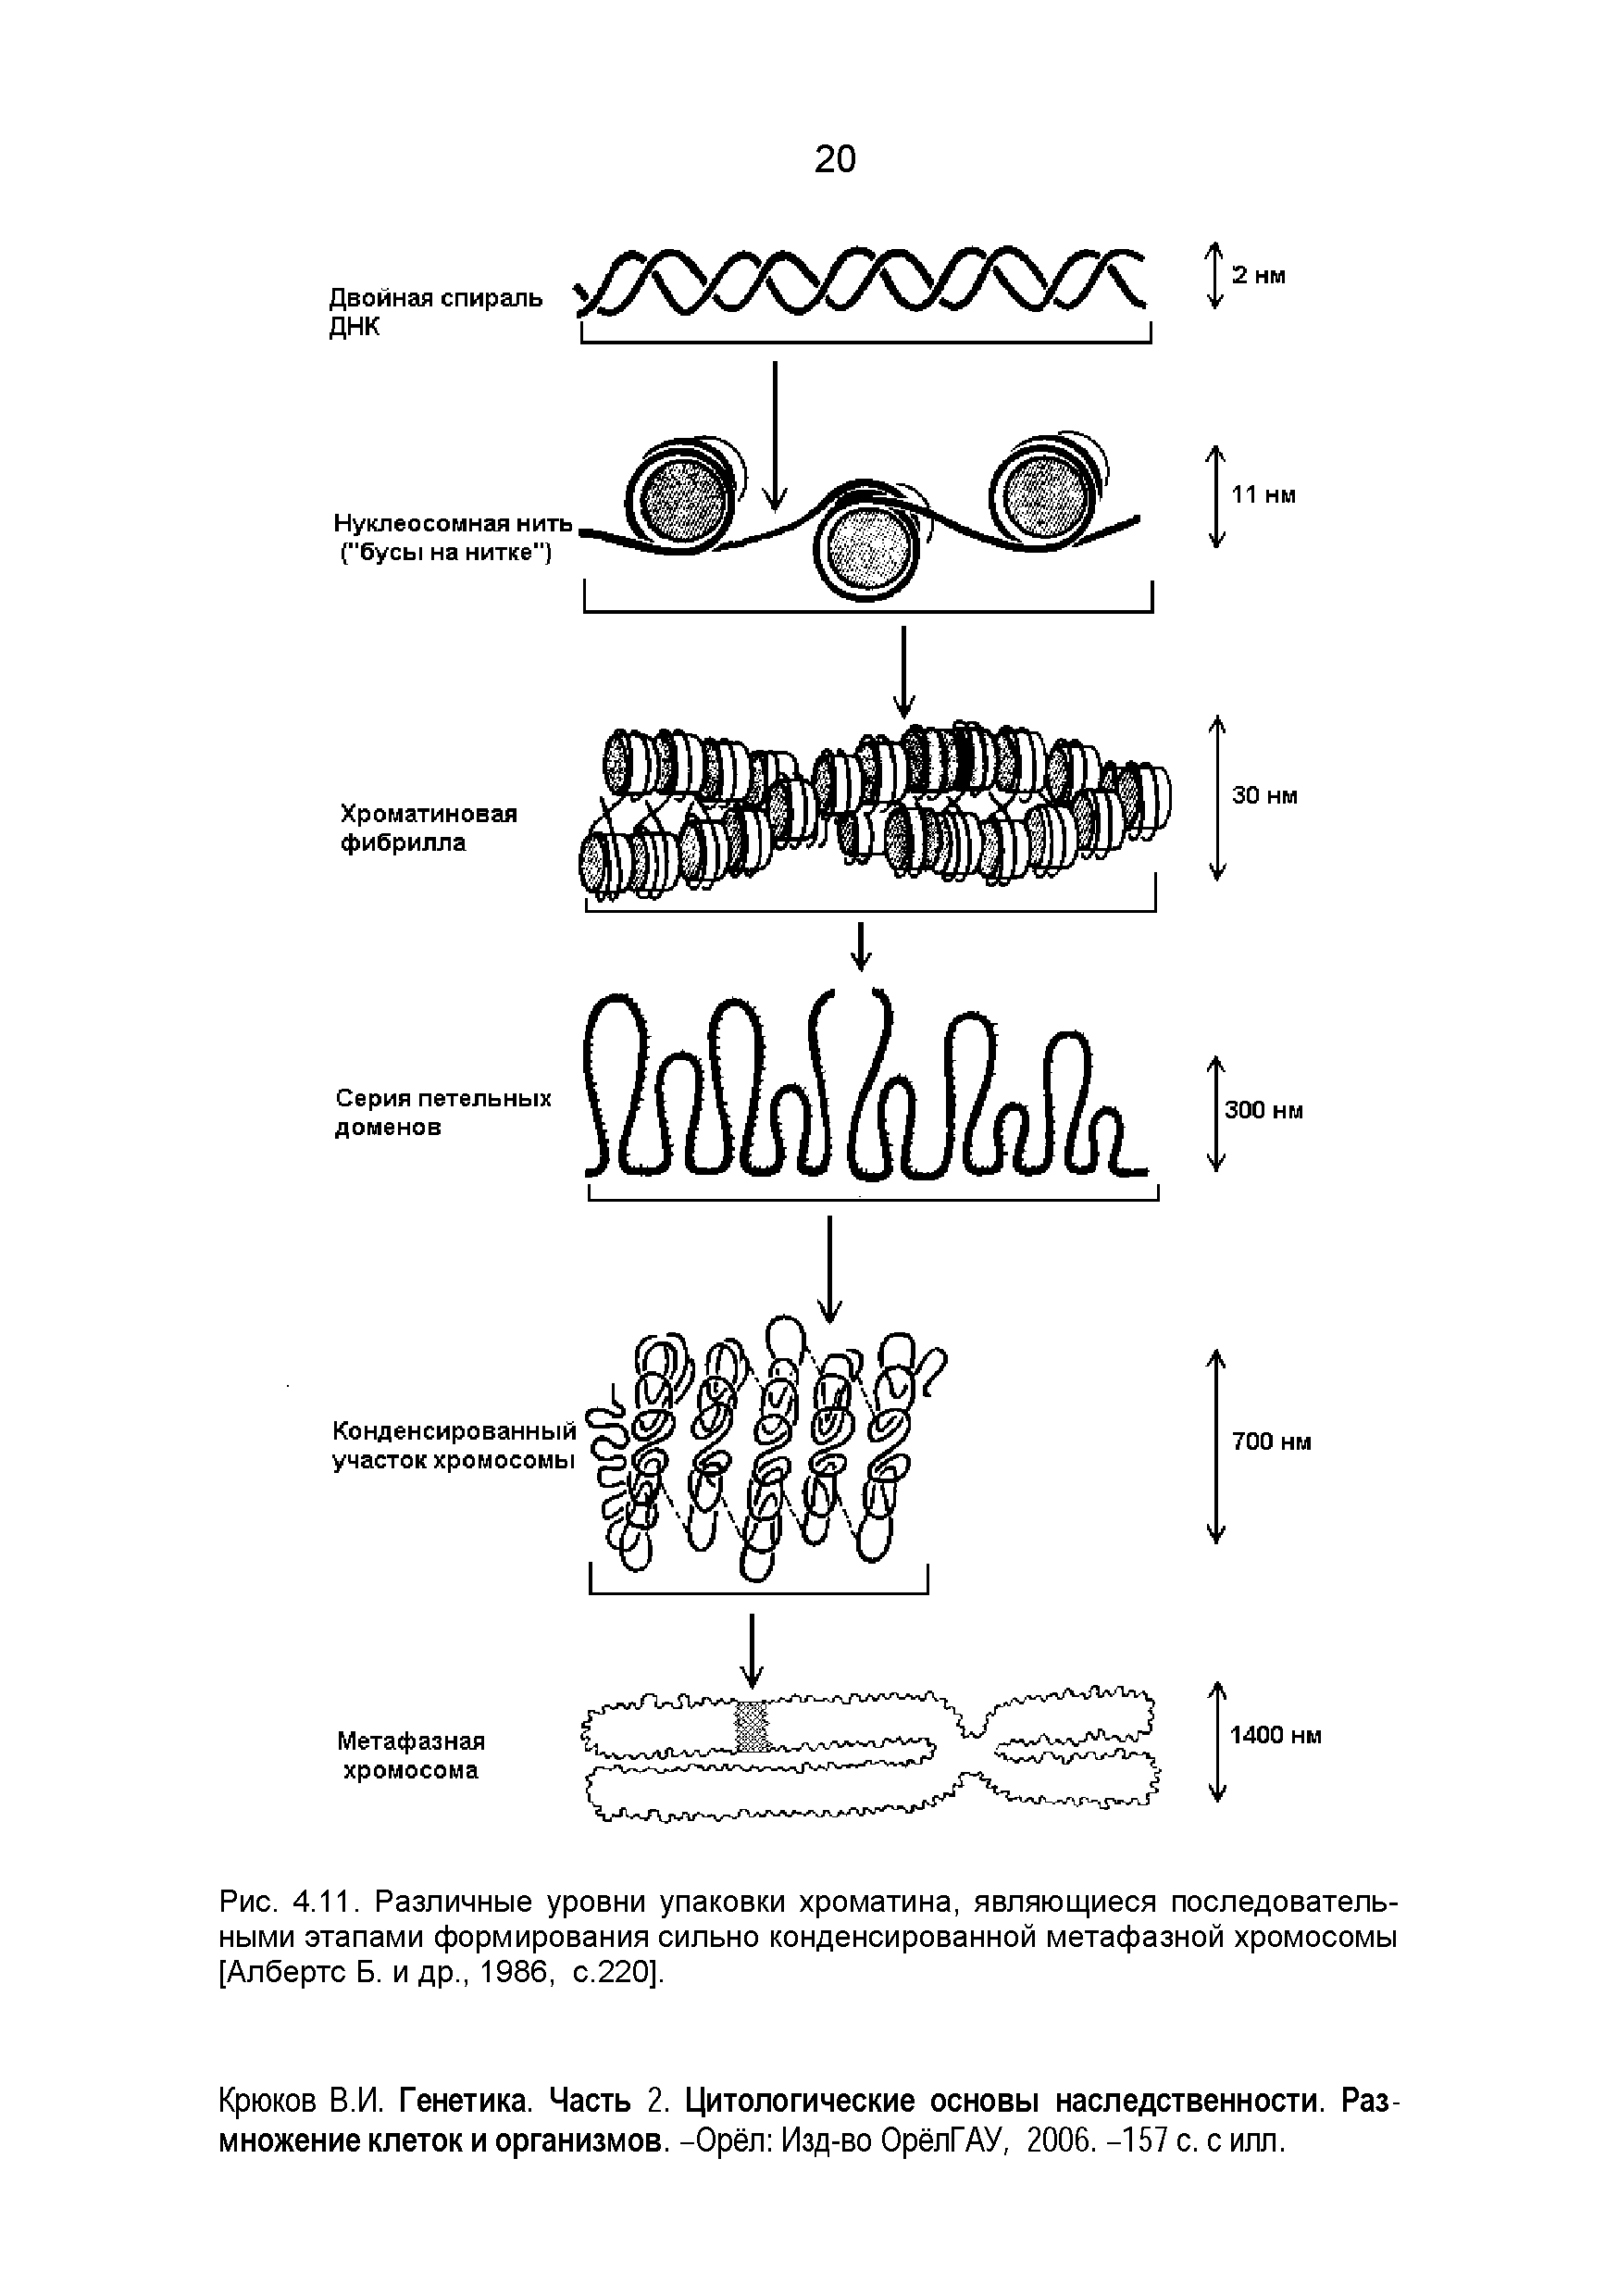 Рис. 4.11. Различные уровни упаковки хроматина, являющиеся последовательными этапами формирования сильно конденсированной метафазной хромосомы [Албертс Б. и др., 1986, с.220].